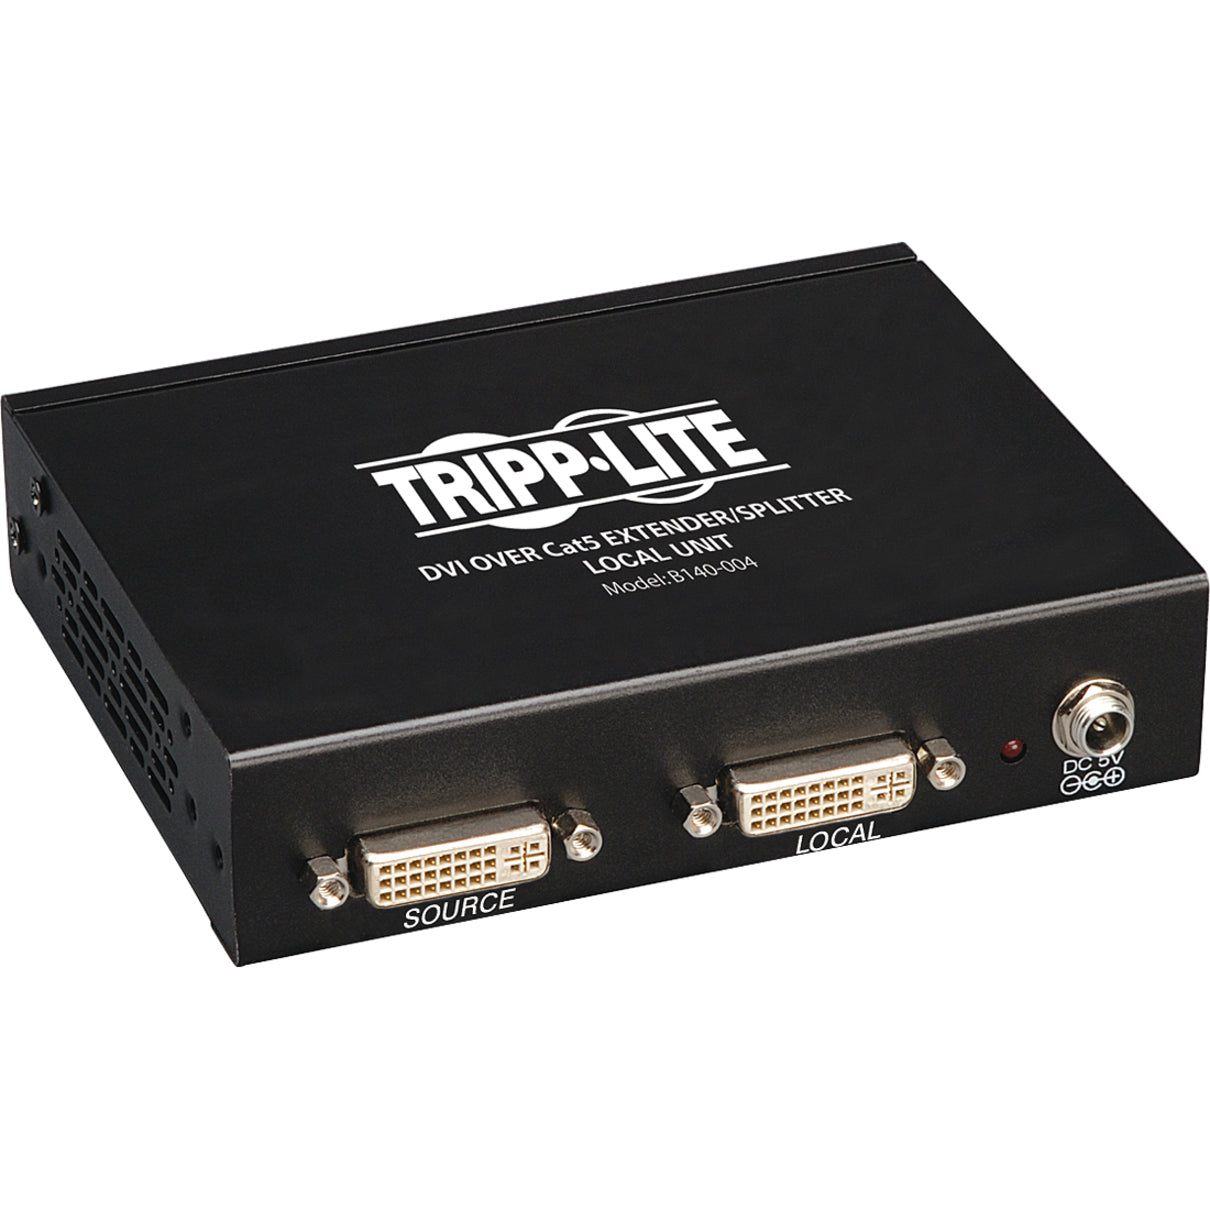 Tripp Lite B140-004 DVI über Cat5 Extender/Splitter 4-Port Lokaler Sender Full HD 1920 x 1080 TAA Konform